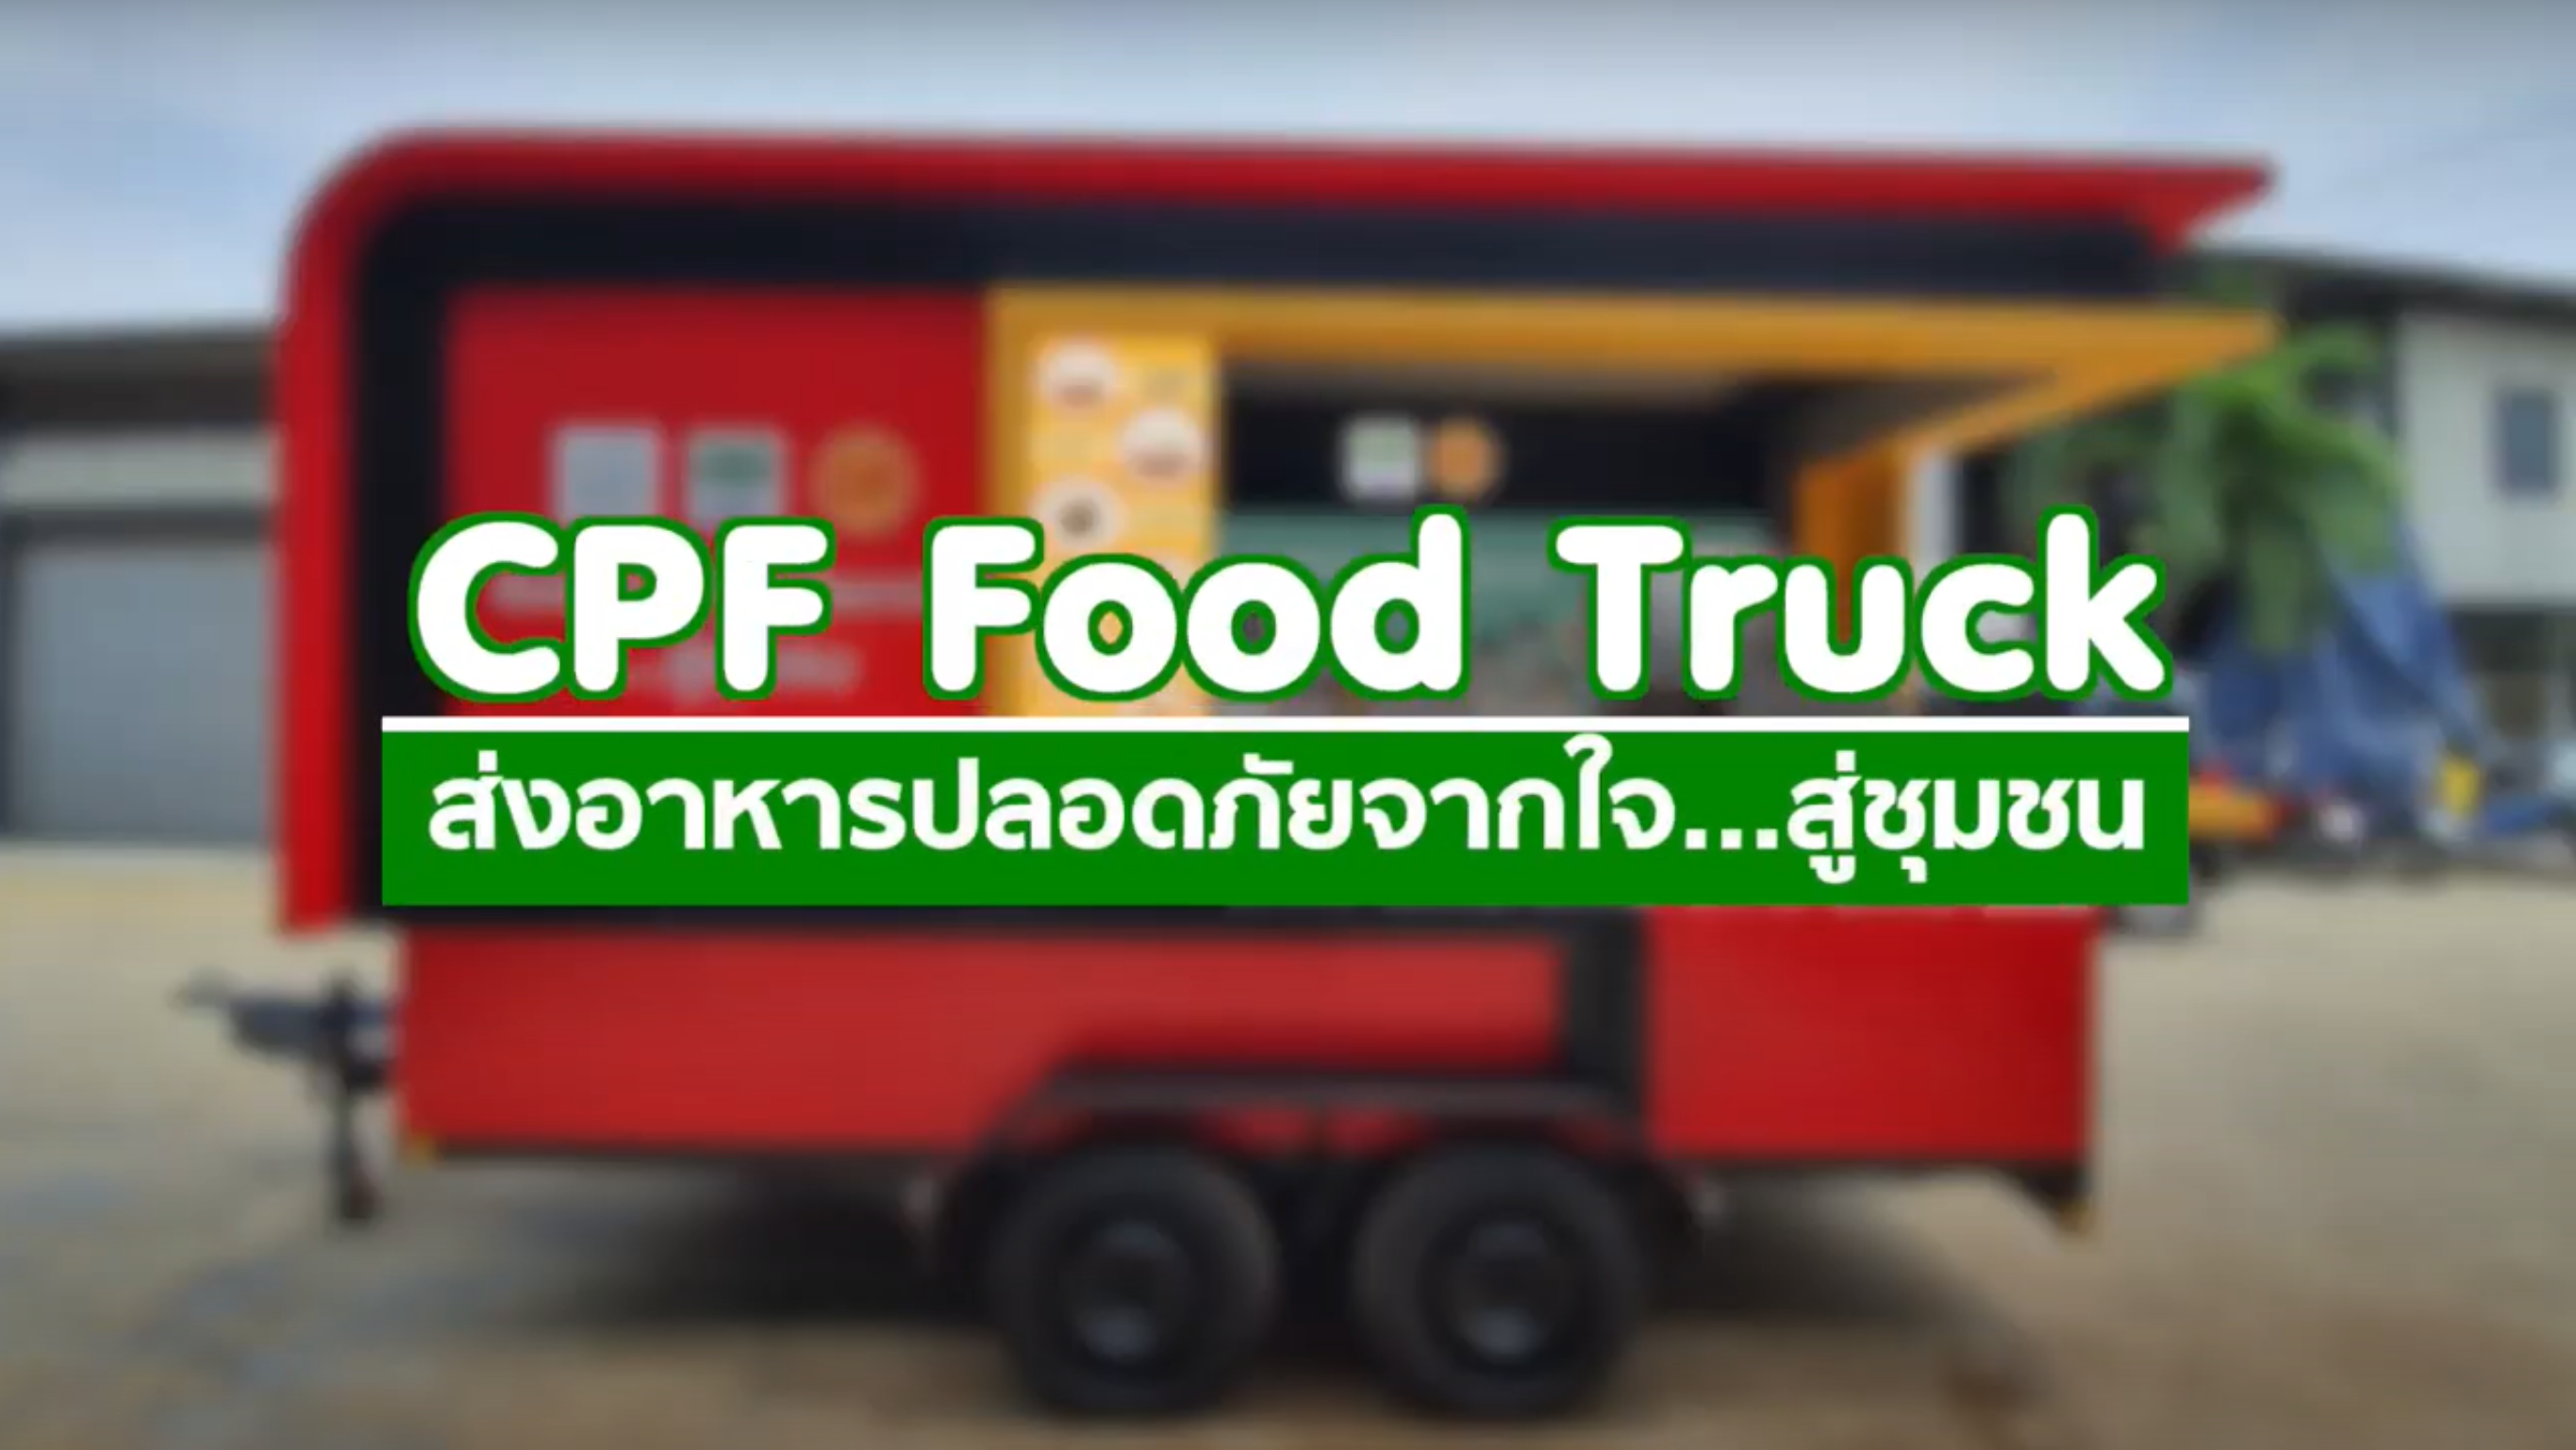 เรื่องดีดี CPF EP.24 ตอน CPF Food Truck เสิร์ฟอาหารอุ่นร้อนพร้อมทานจากใจ สู่ชุมชน ร่วมสู้ภัยโควิด-19